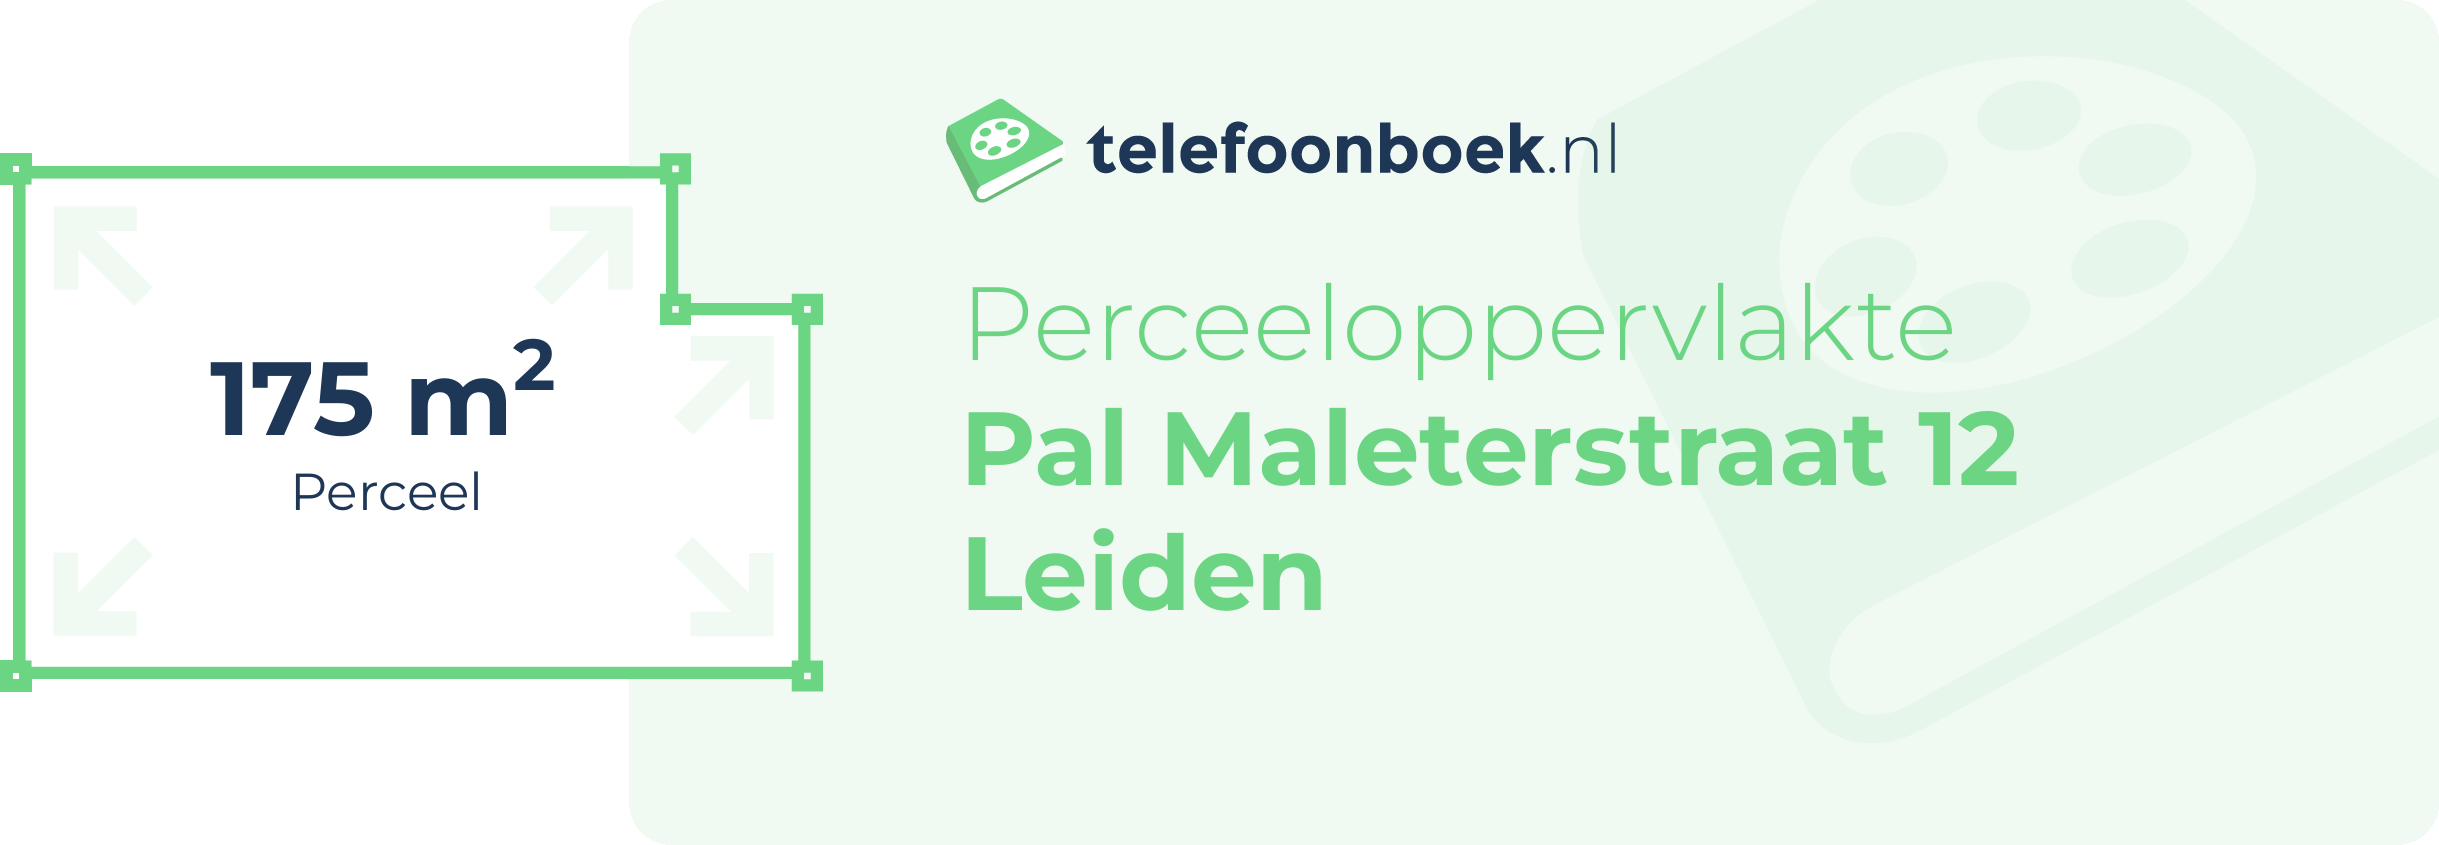 Perceeloppervlakte Pal Maleterstraat 12 Leiden